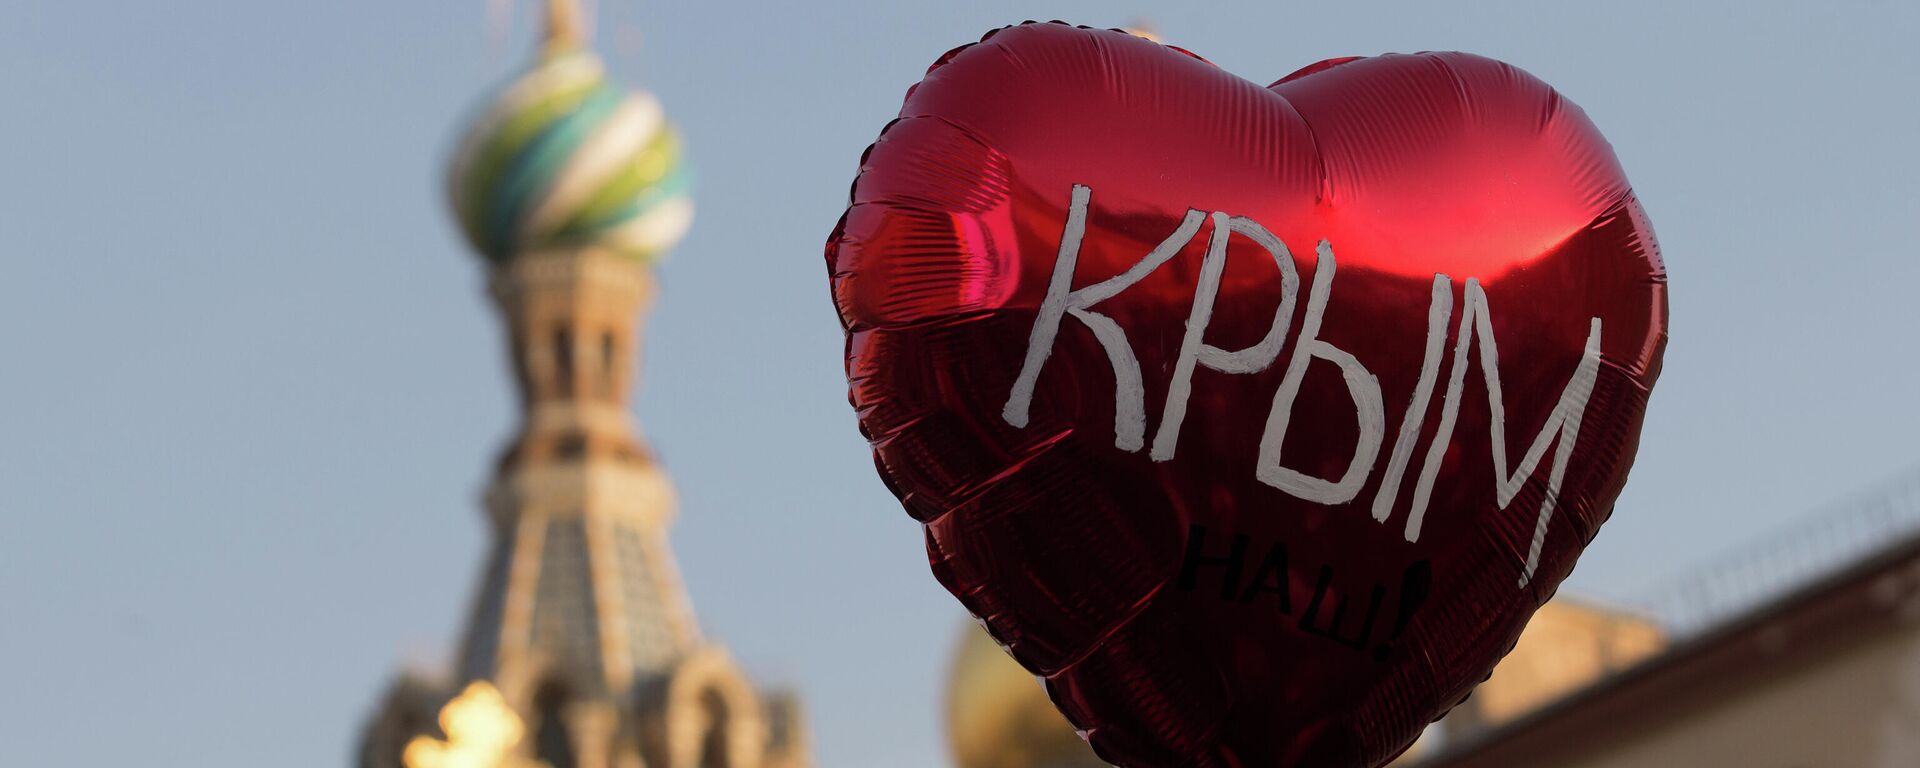 Воздушный шар во время праздничного митинга в Санкт-Петербурге в честь воссоединения Крыма и Севастополя с Россией - Sputnik Узбекистан, 1920, 13.03.2021